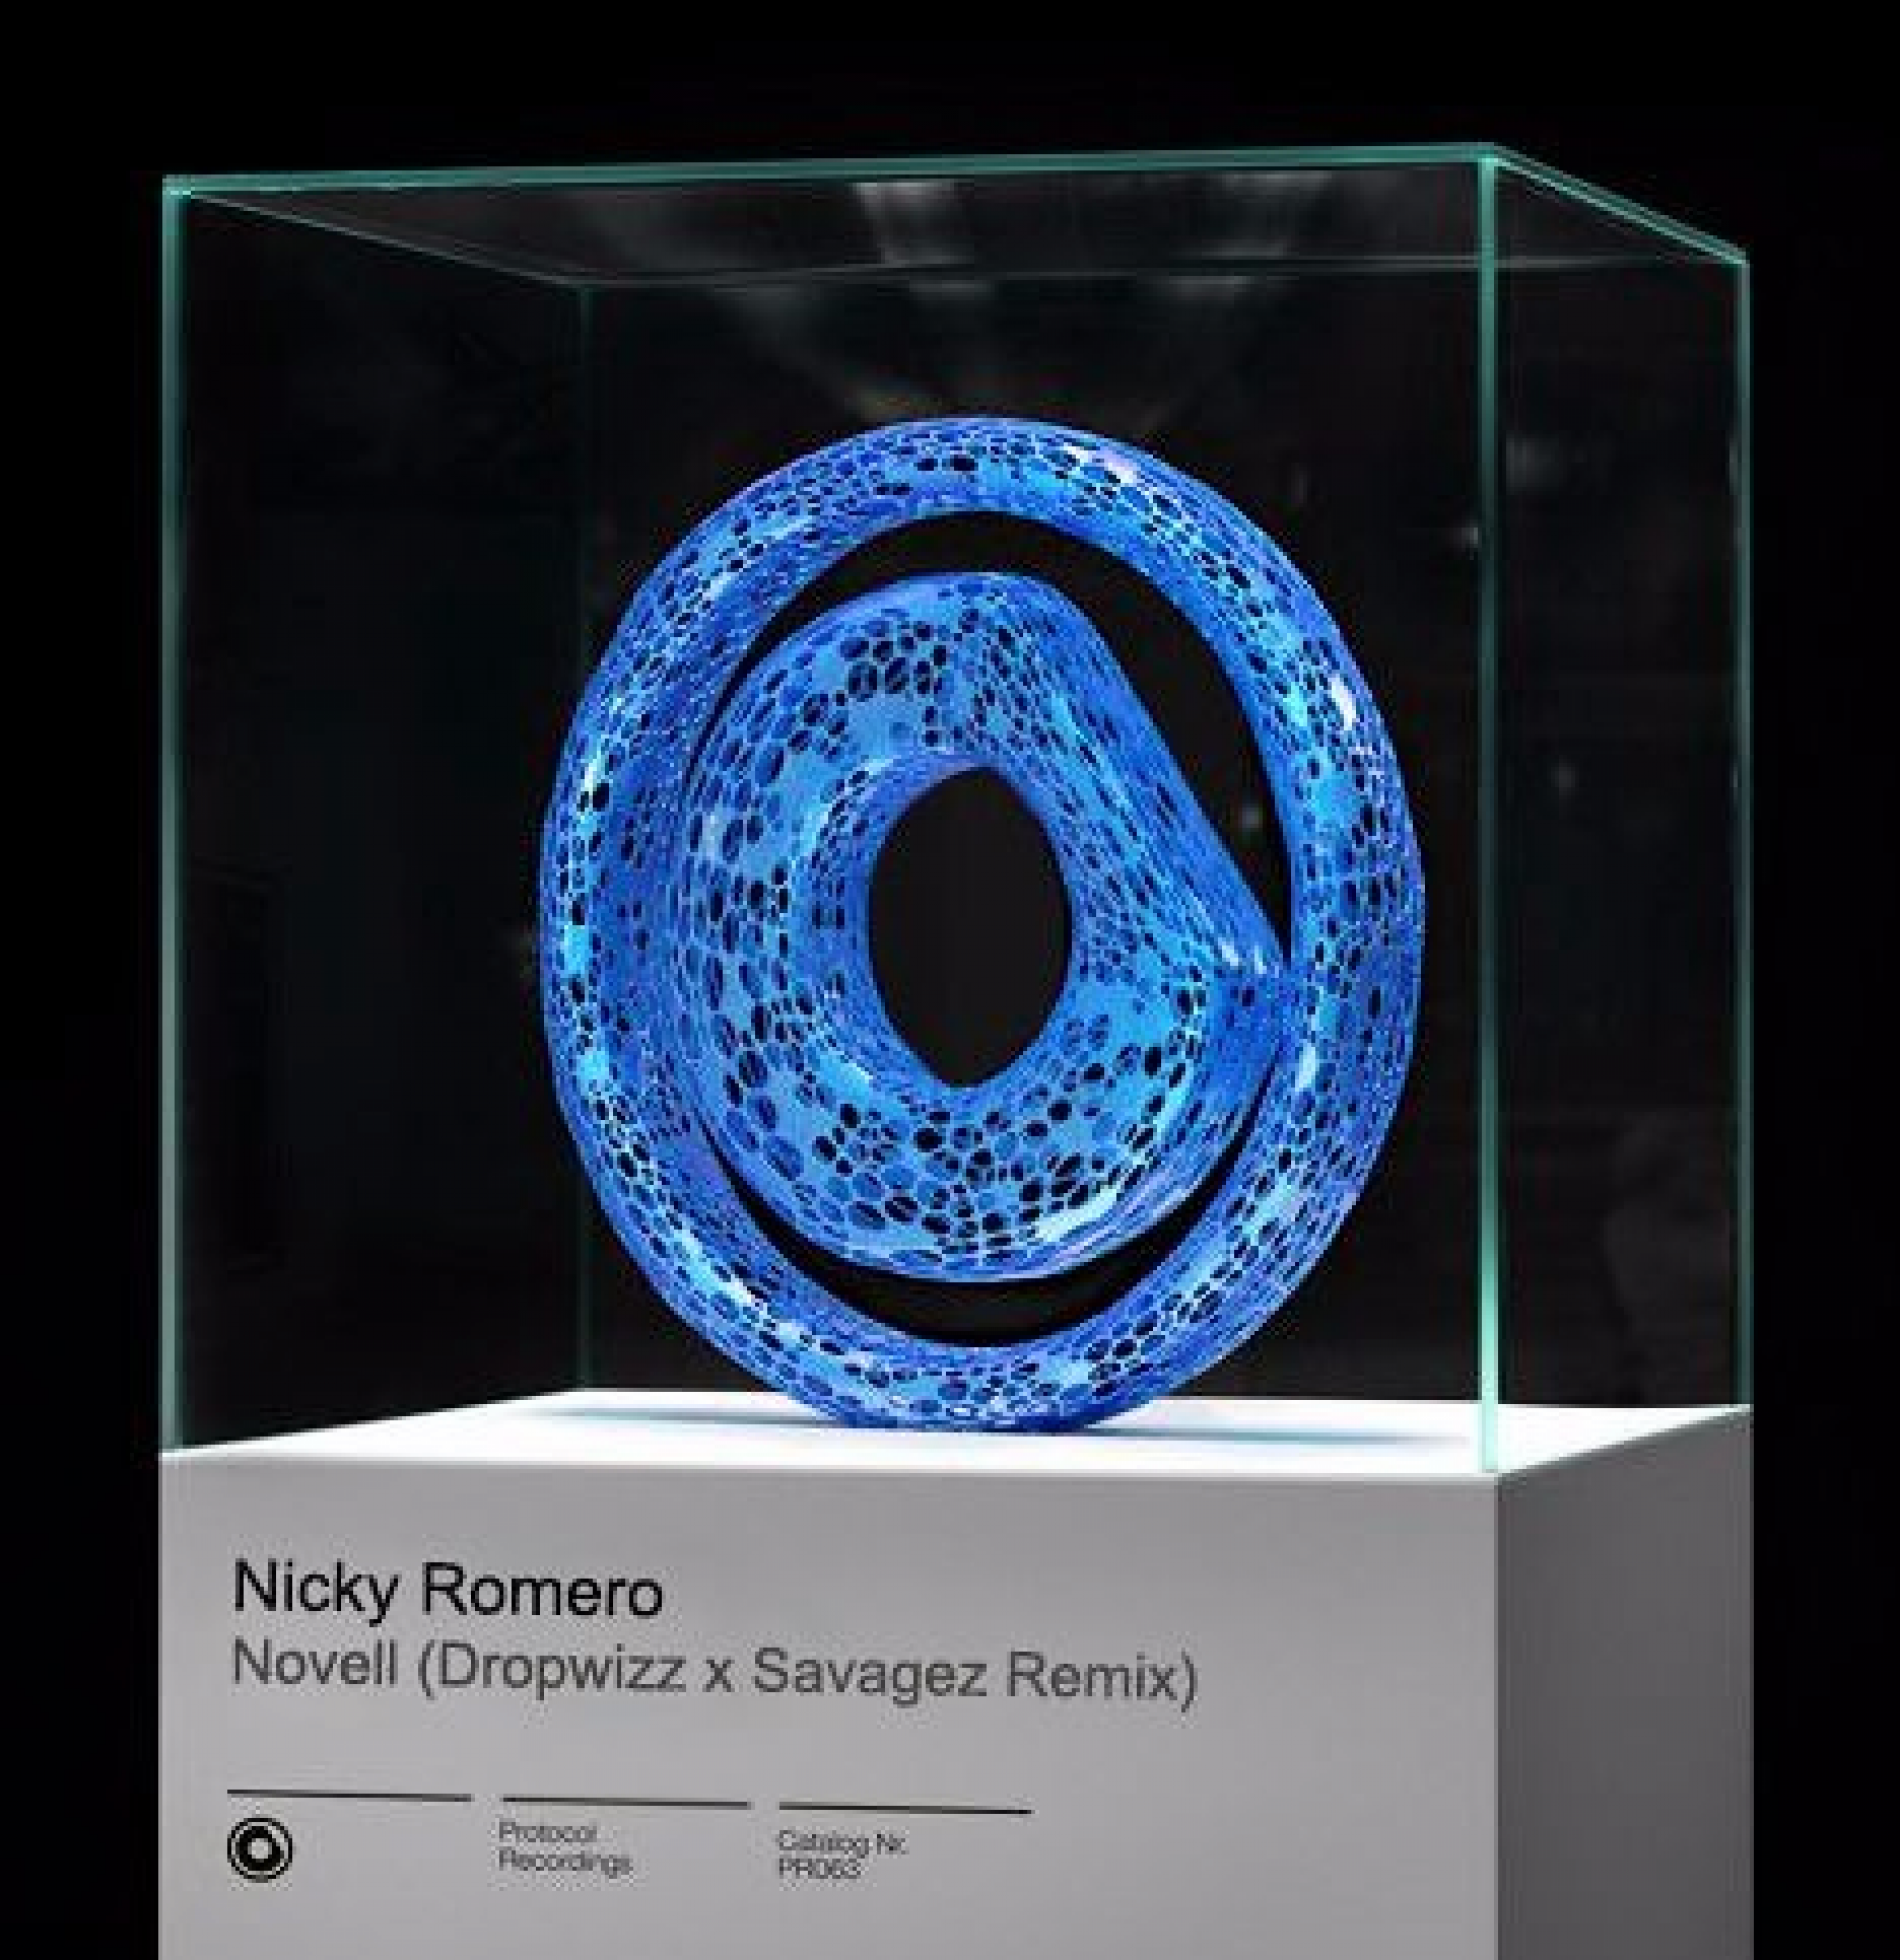 Nicky Romero – Novell (Dropwizz x Savagez Remix)